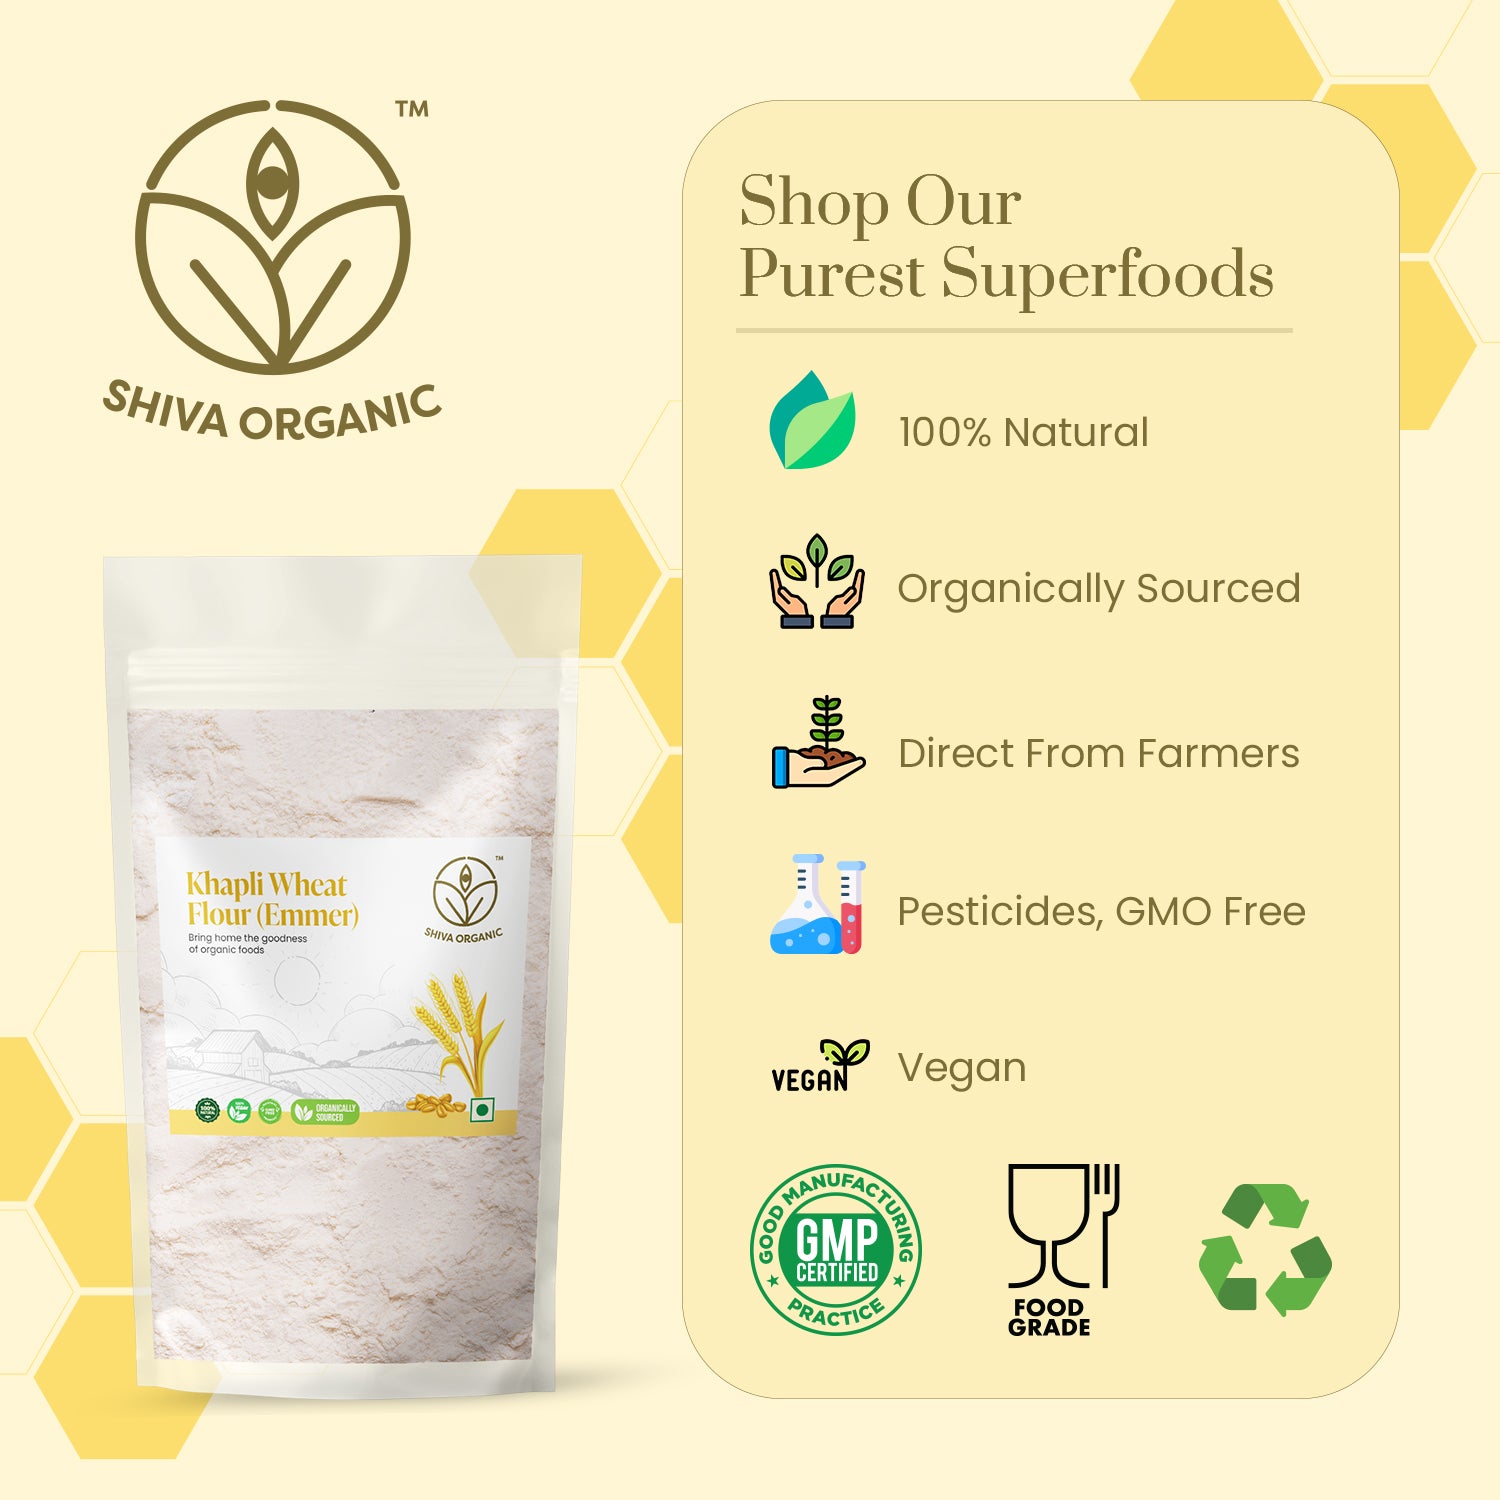 Khapli atta flour | emmer wheat | organic what | 4.5 kg